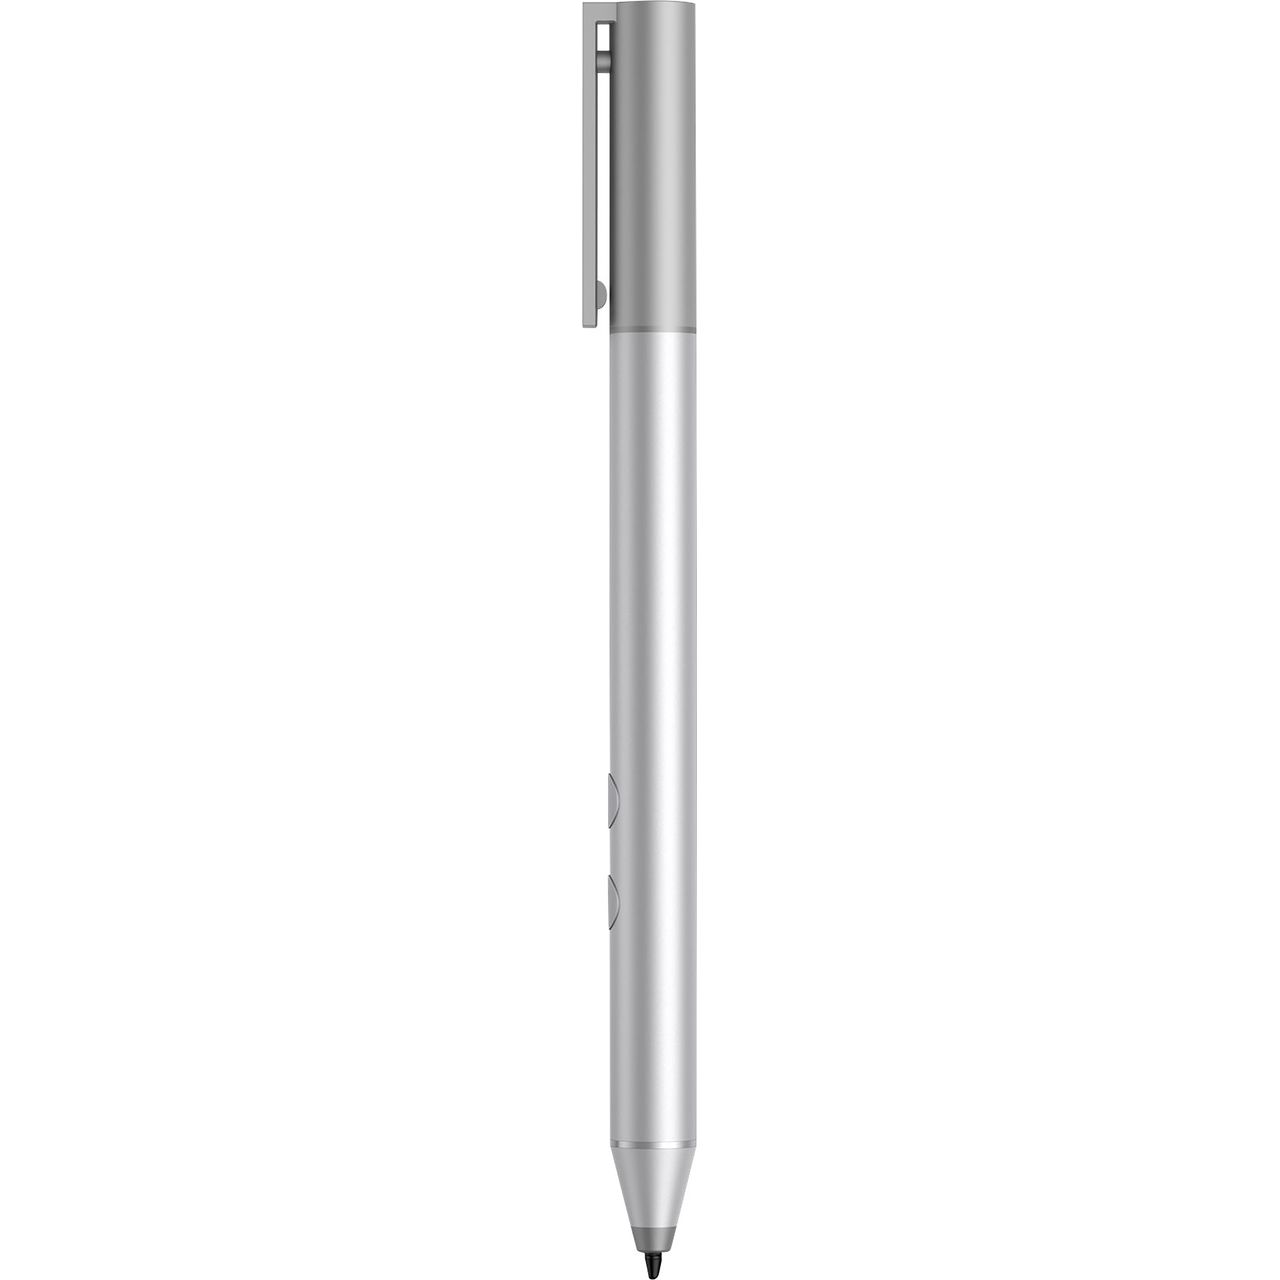 HP Digital Pen Review